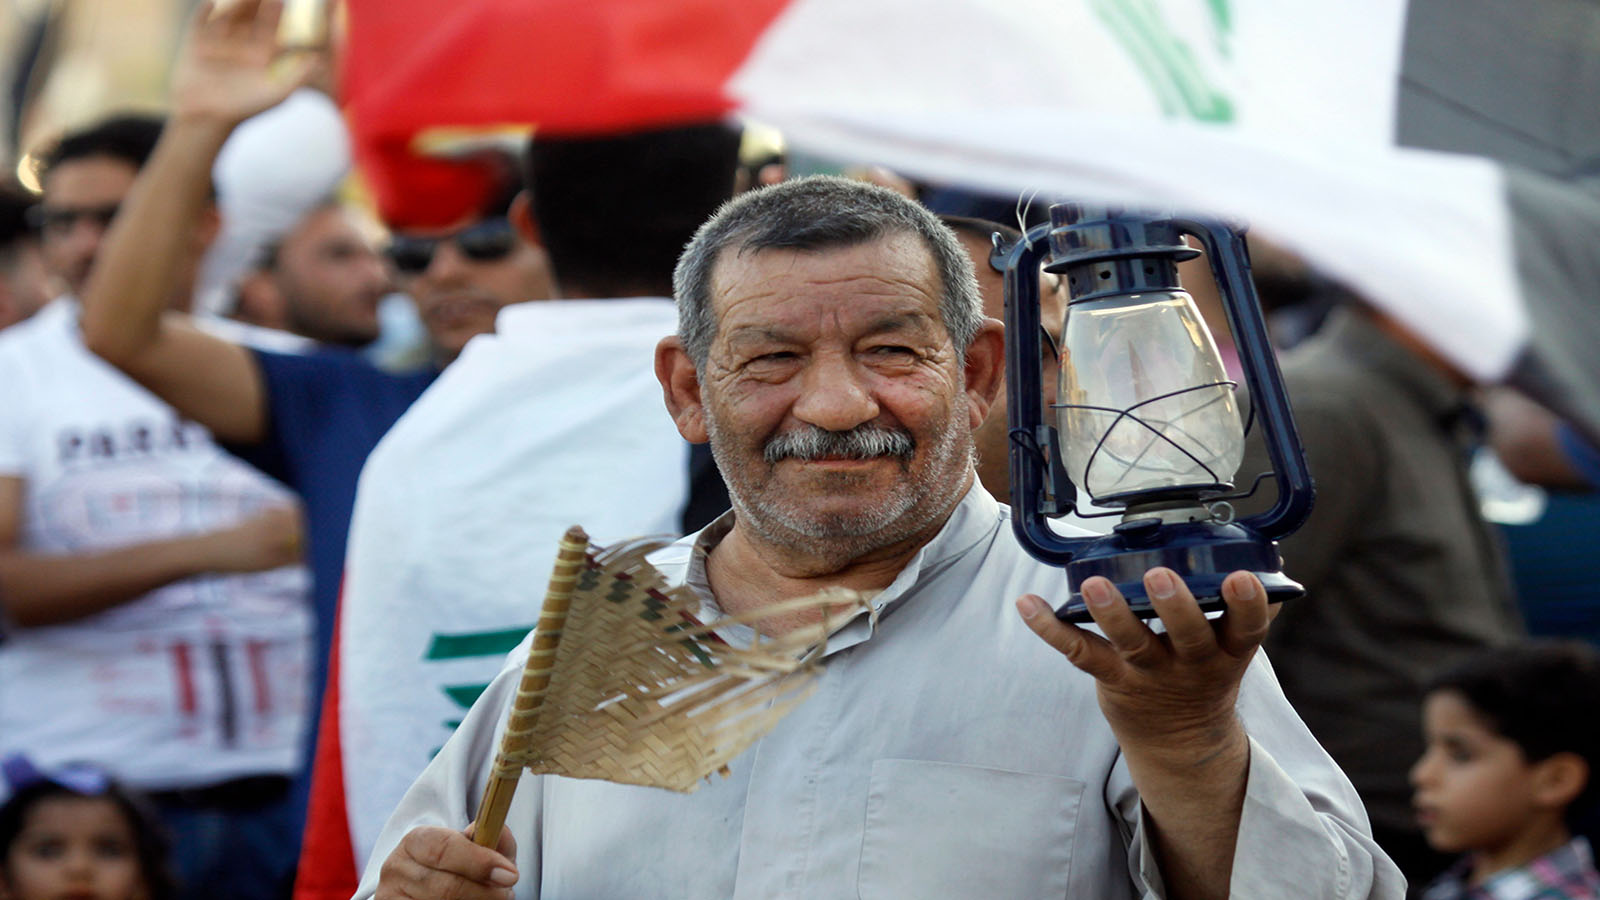 العراق: التظاهرات تتسع..والعبادي يتهم "مندسين"